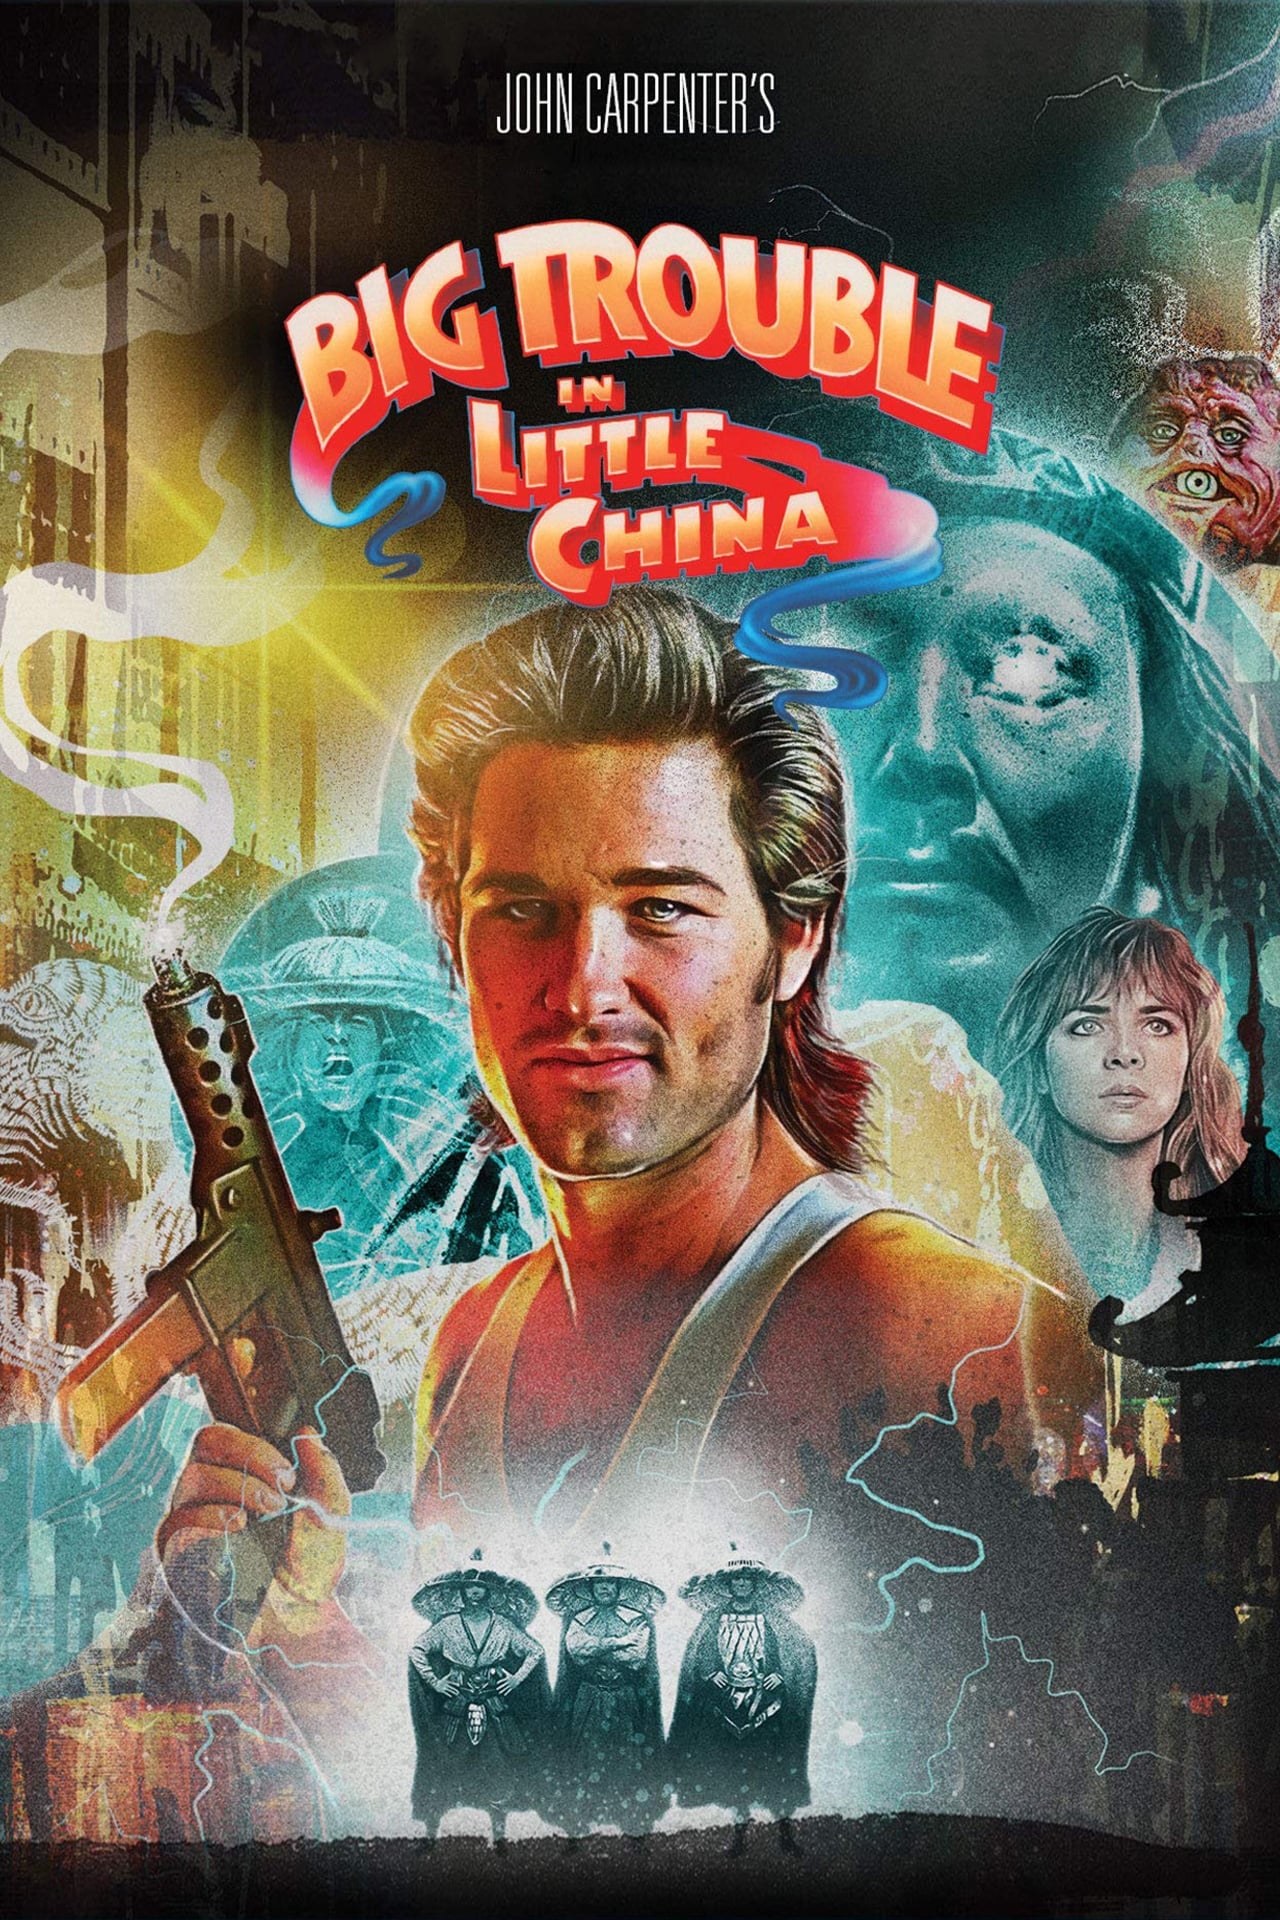 Wielka draka w chińskiej dzielnicy (1986) - Posters — The Movie ...